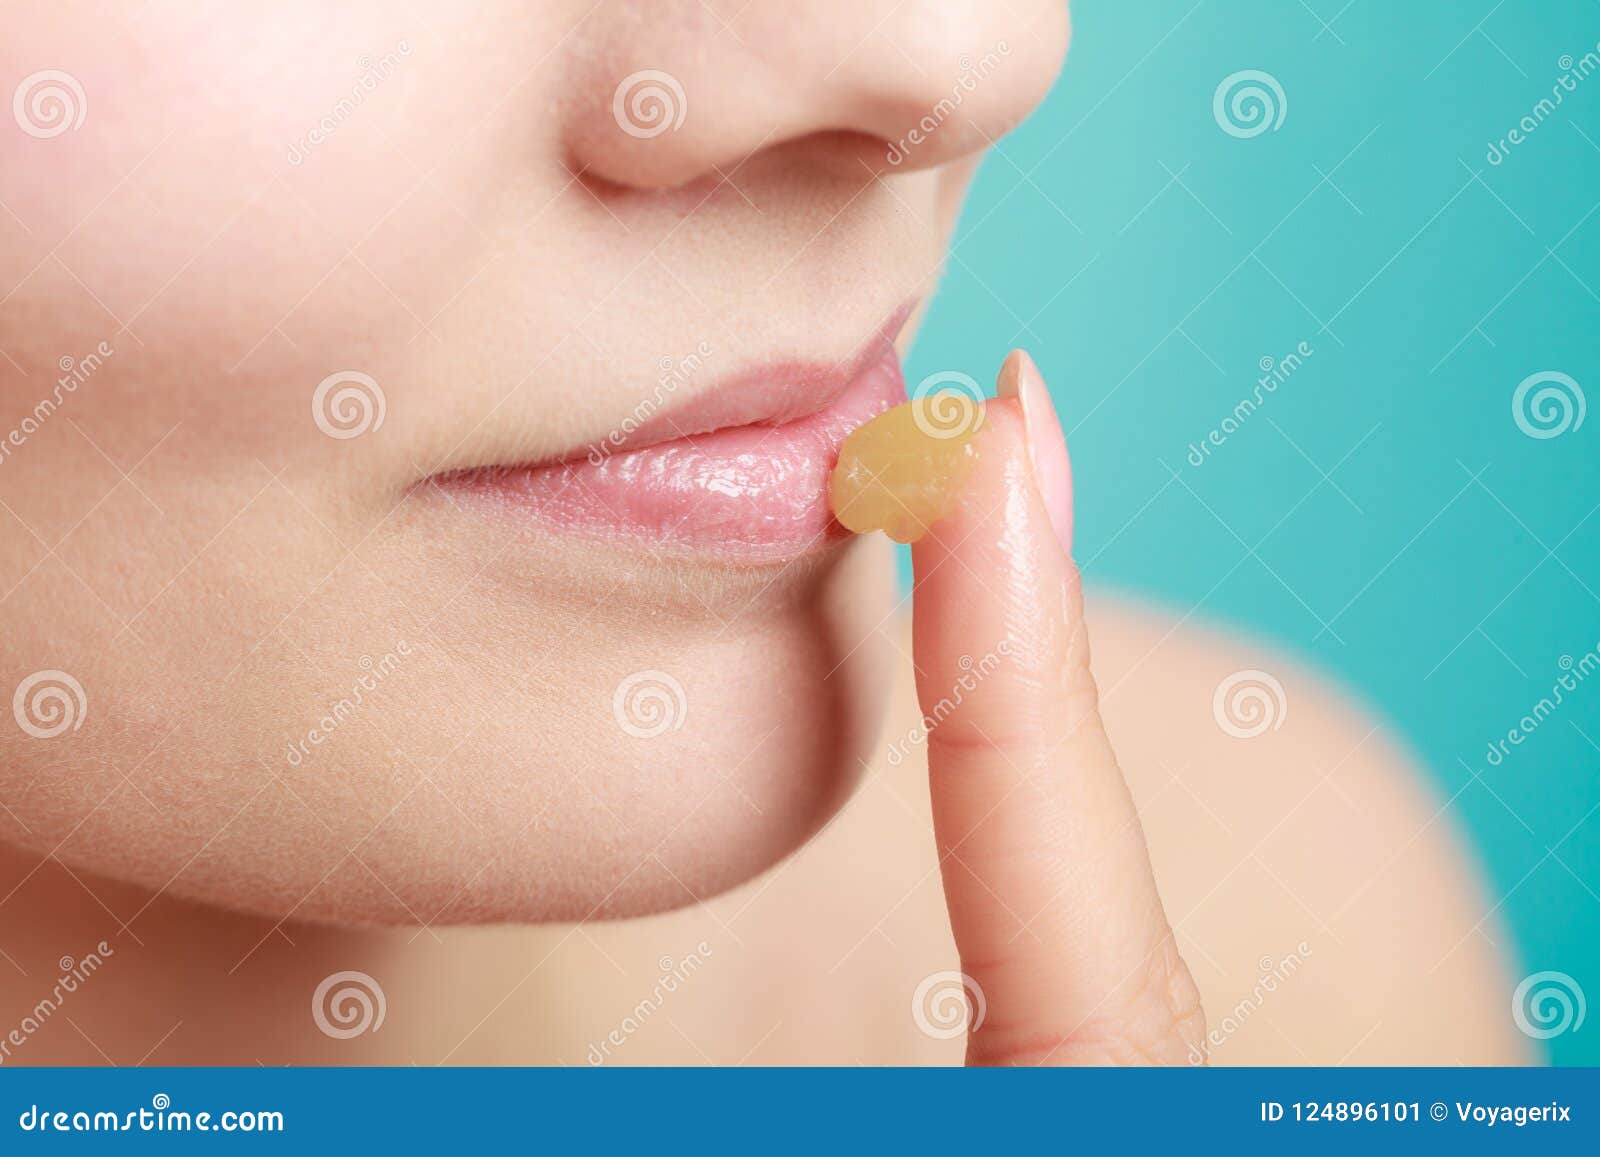 Мазать губы гигиенической помадой